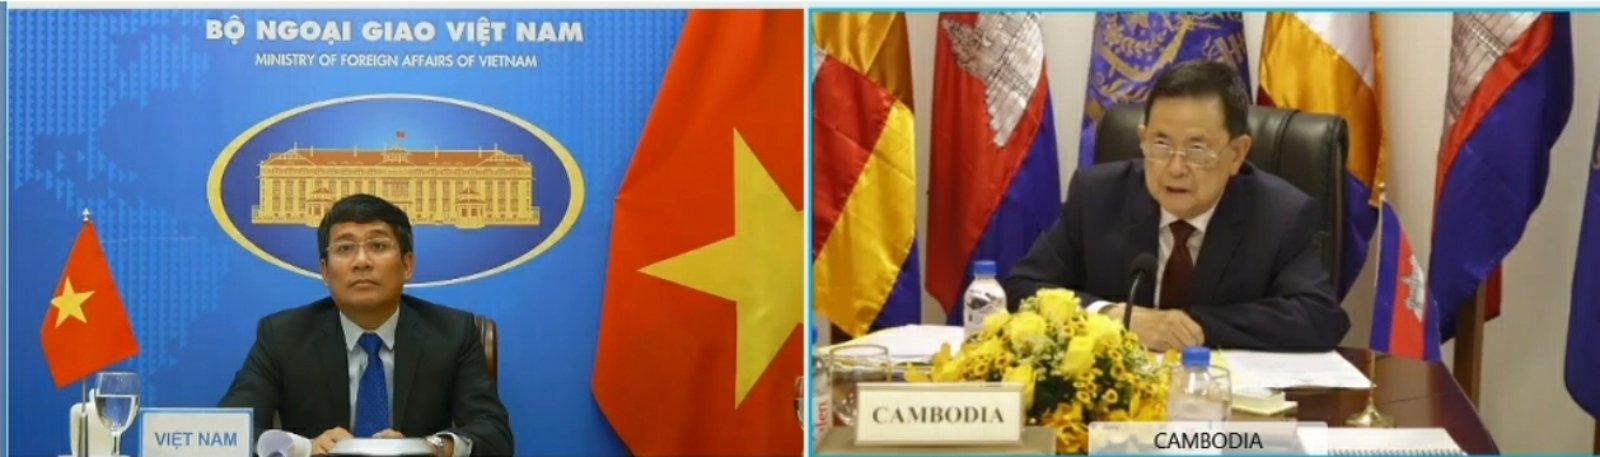 Vietnam, Cambodia discuss land border issues